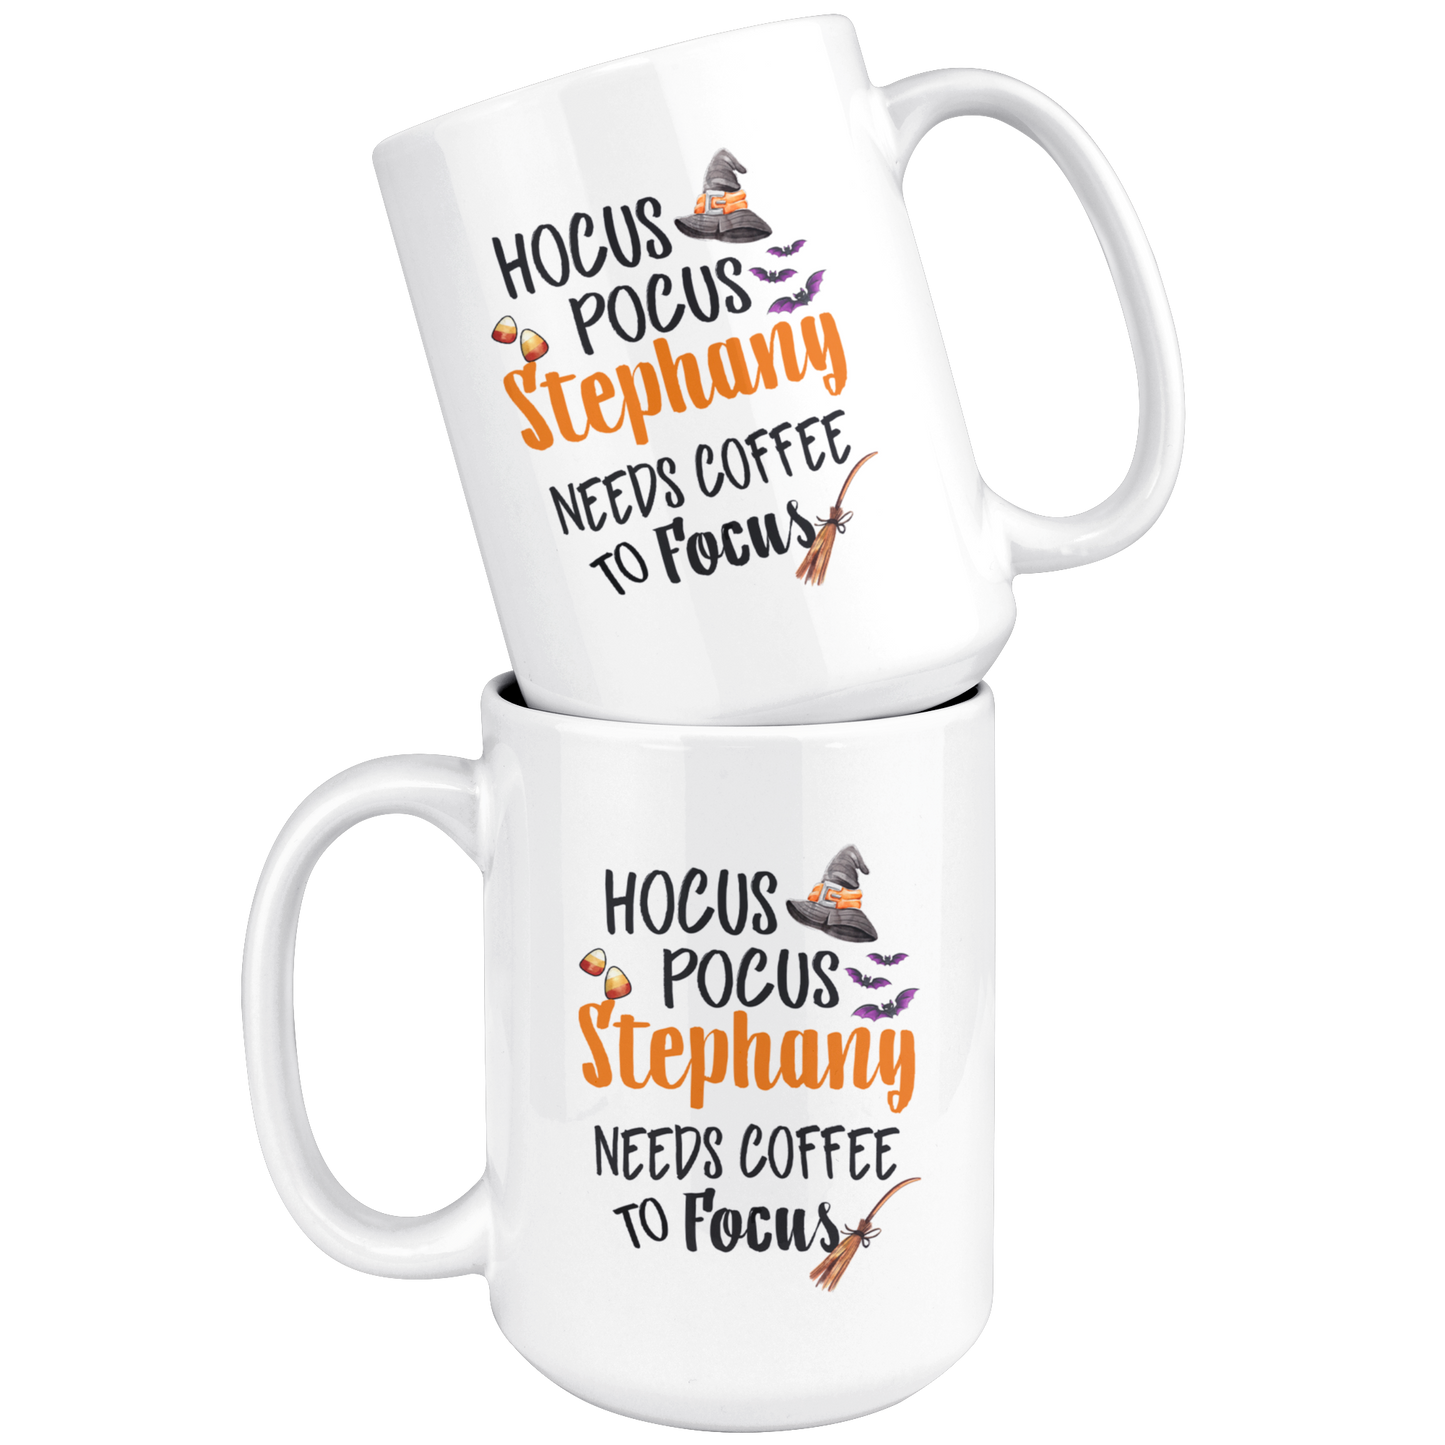 ND-20836314-sp-25658 - [ Stephany | 1 | 1 ] (mug_15oz_white) Hocus Pocus Stephany Needs Coffee To Focus - Halloween Coffe